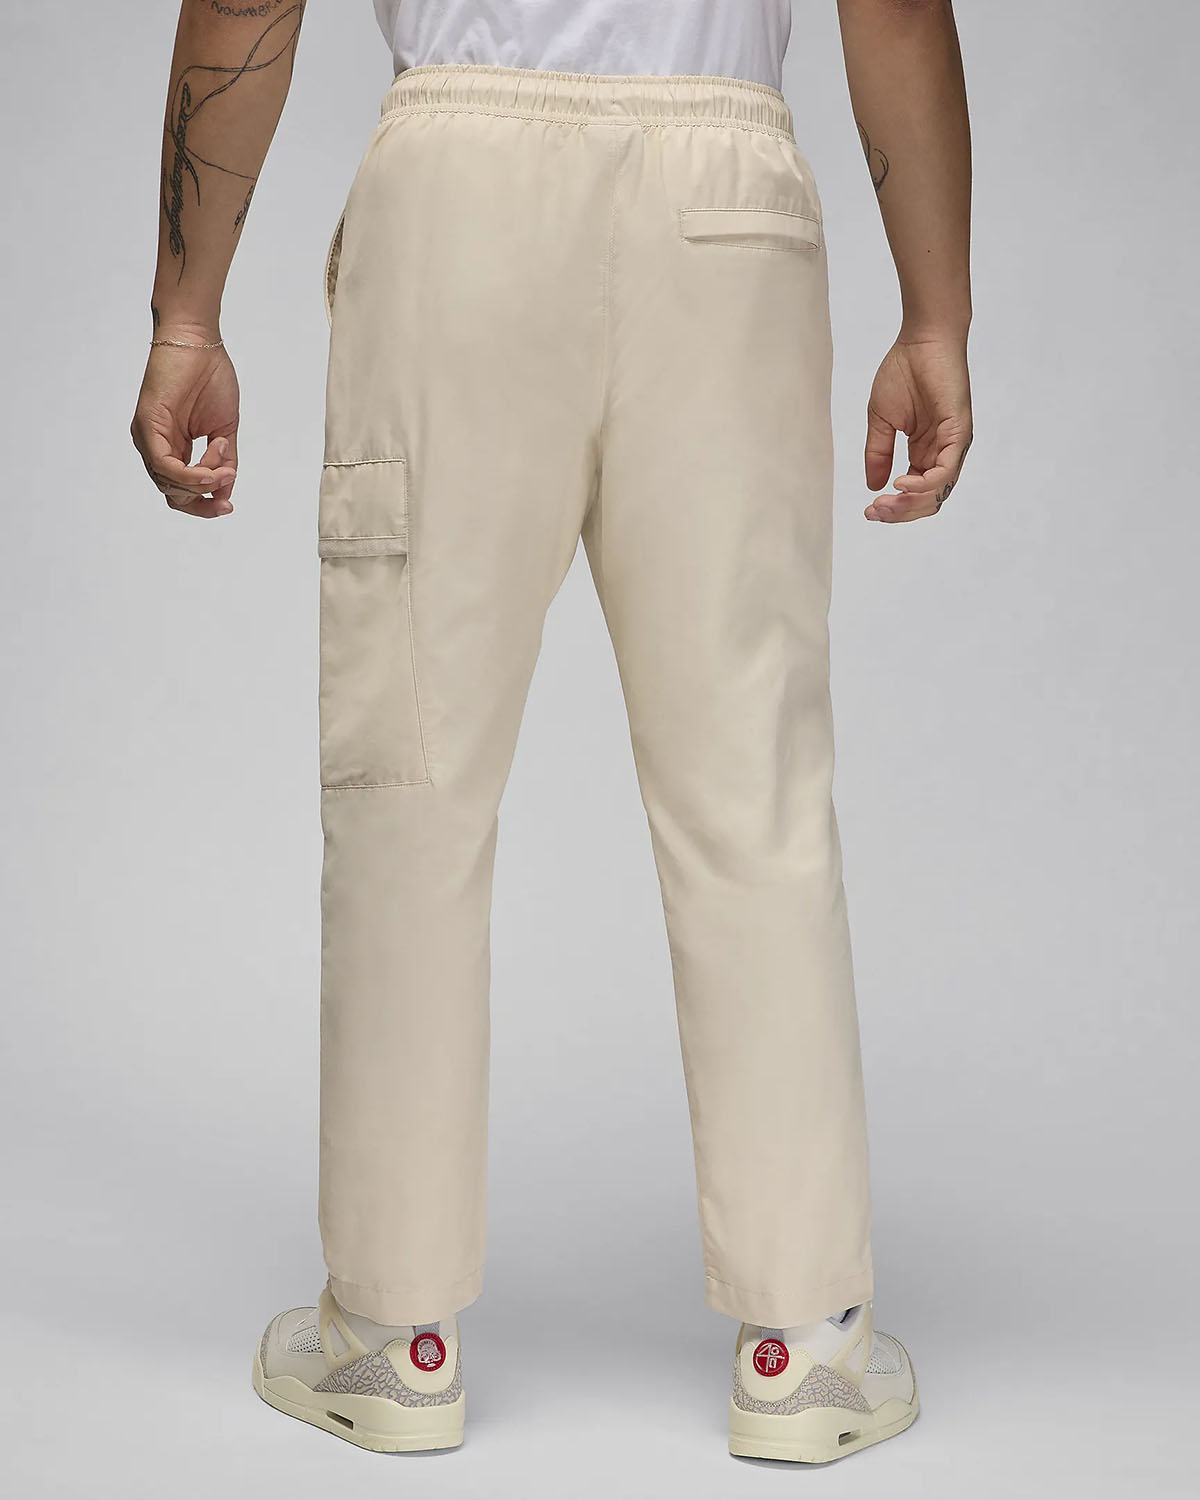 Jordan Essentials Woven Pants Air Jordan 1 Acclimate Releasing in White and Grey 2